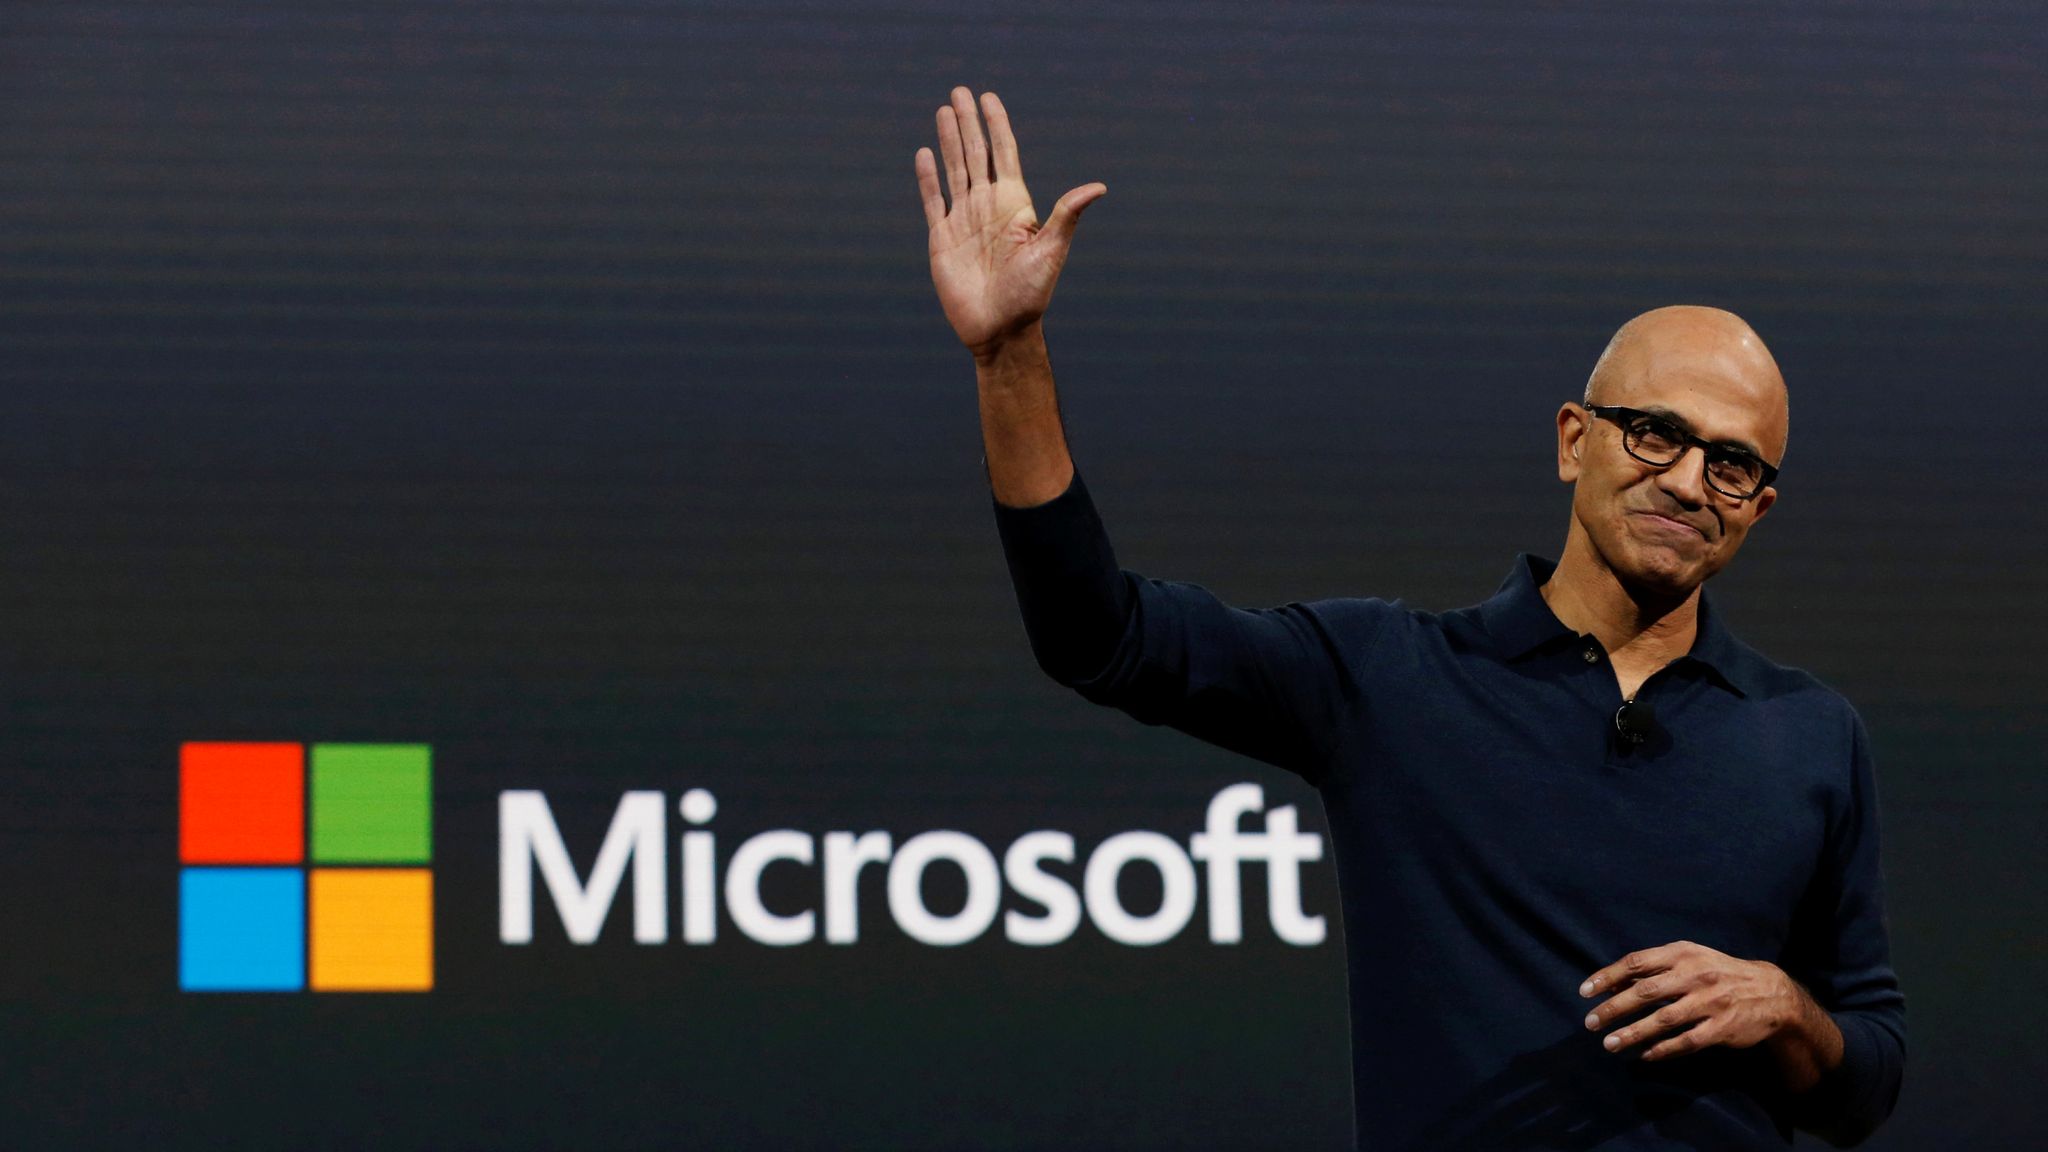 Microsoft Chief Executive Officer Satya Narayana Nadella